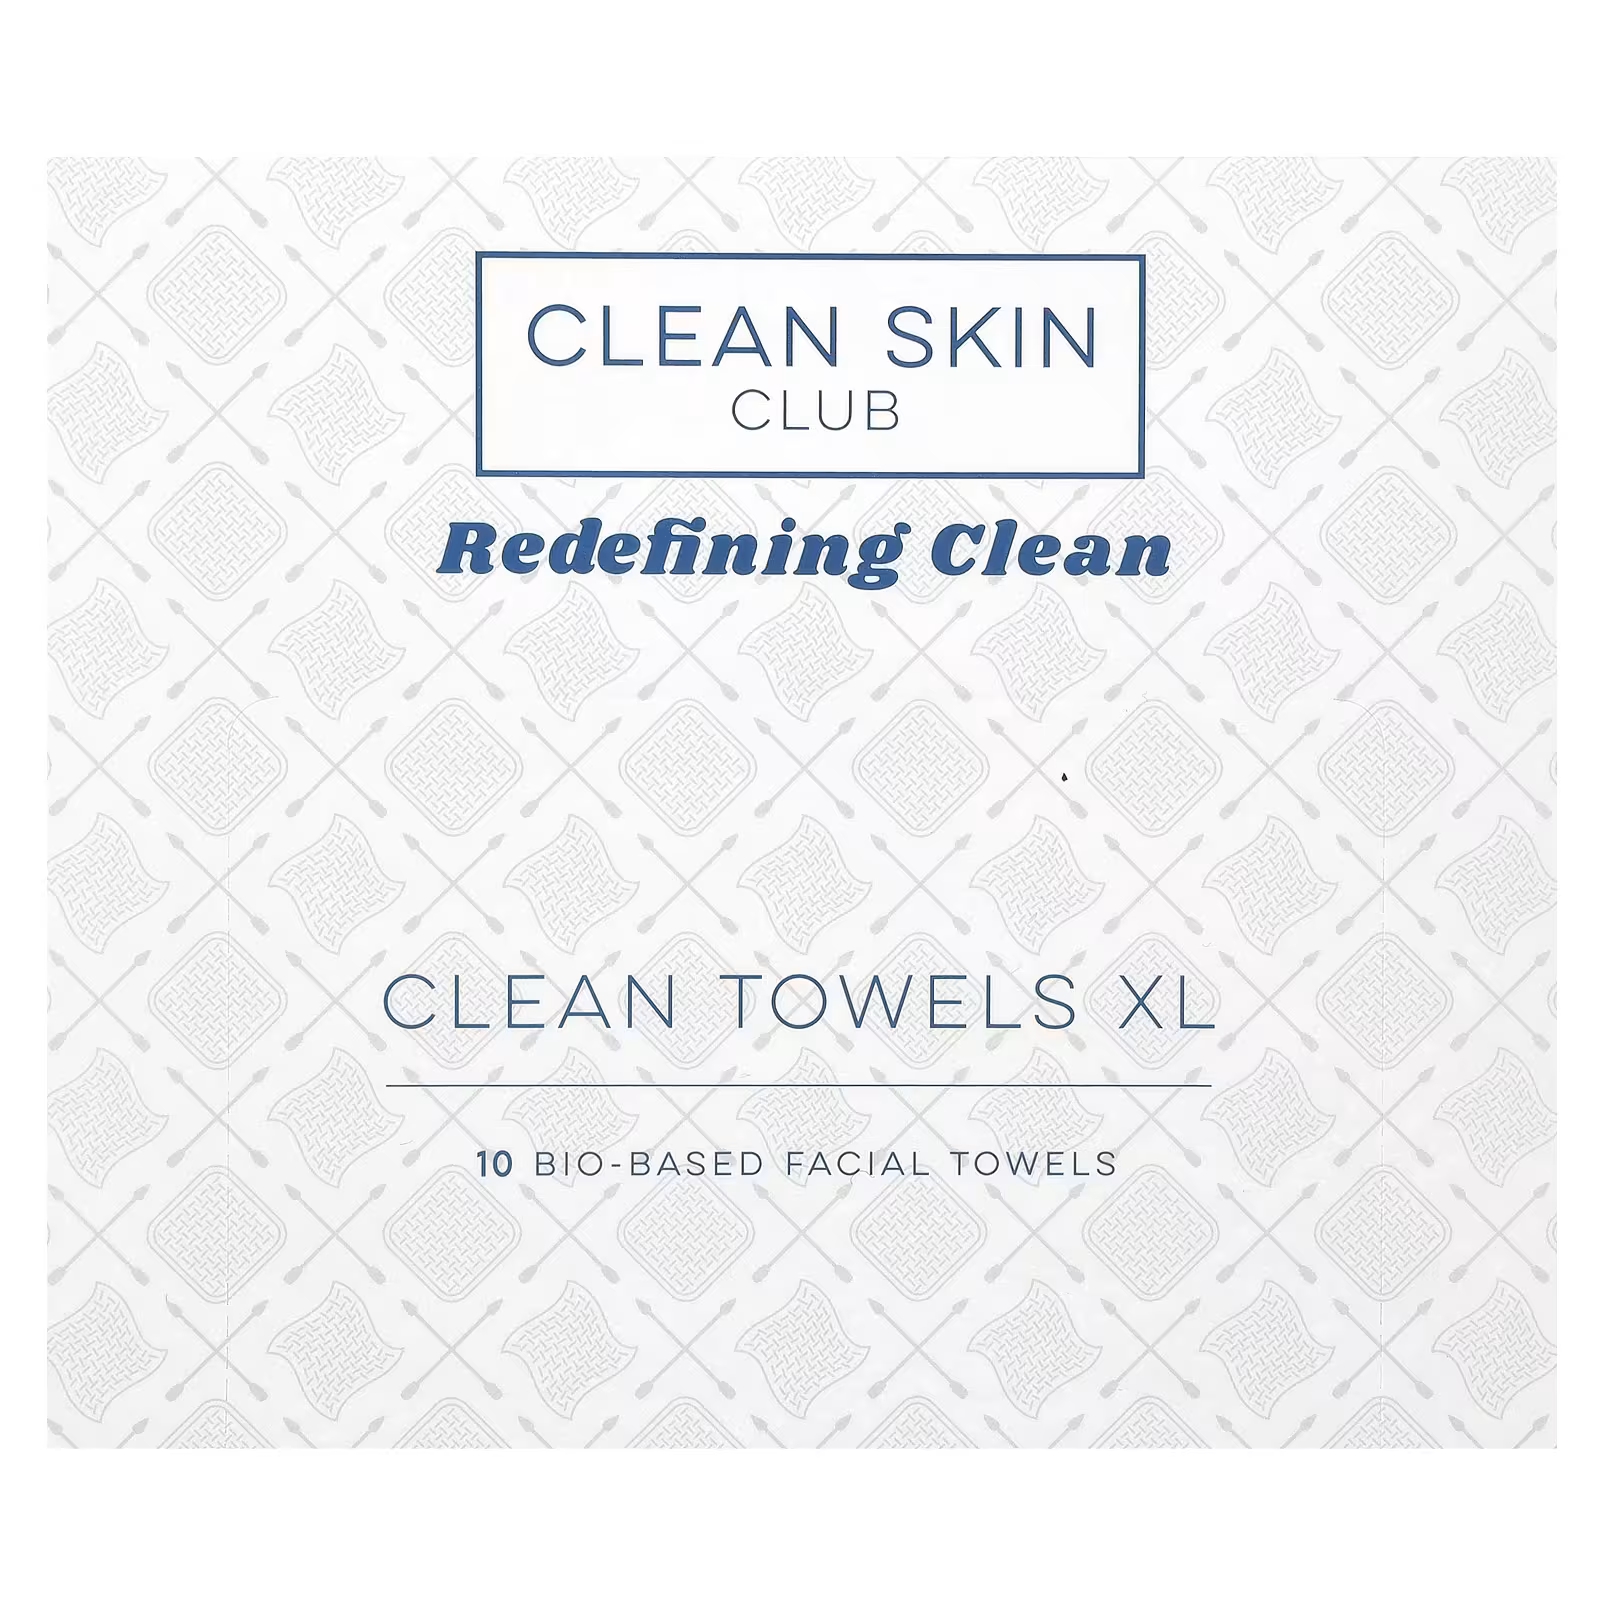 Полотенца для лица Clean Skin Club Clean Towels XL 10 на биологической основе